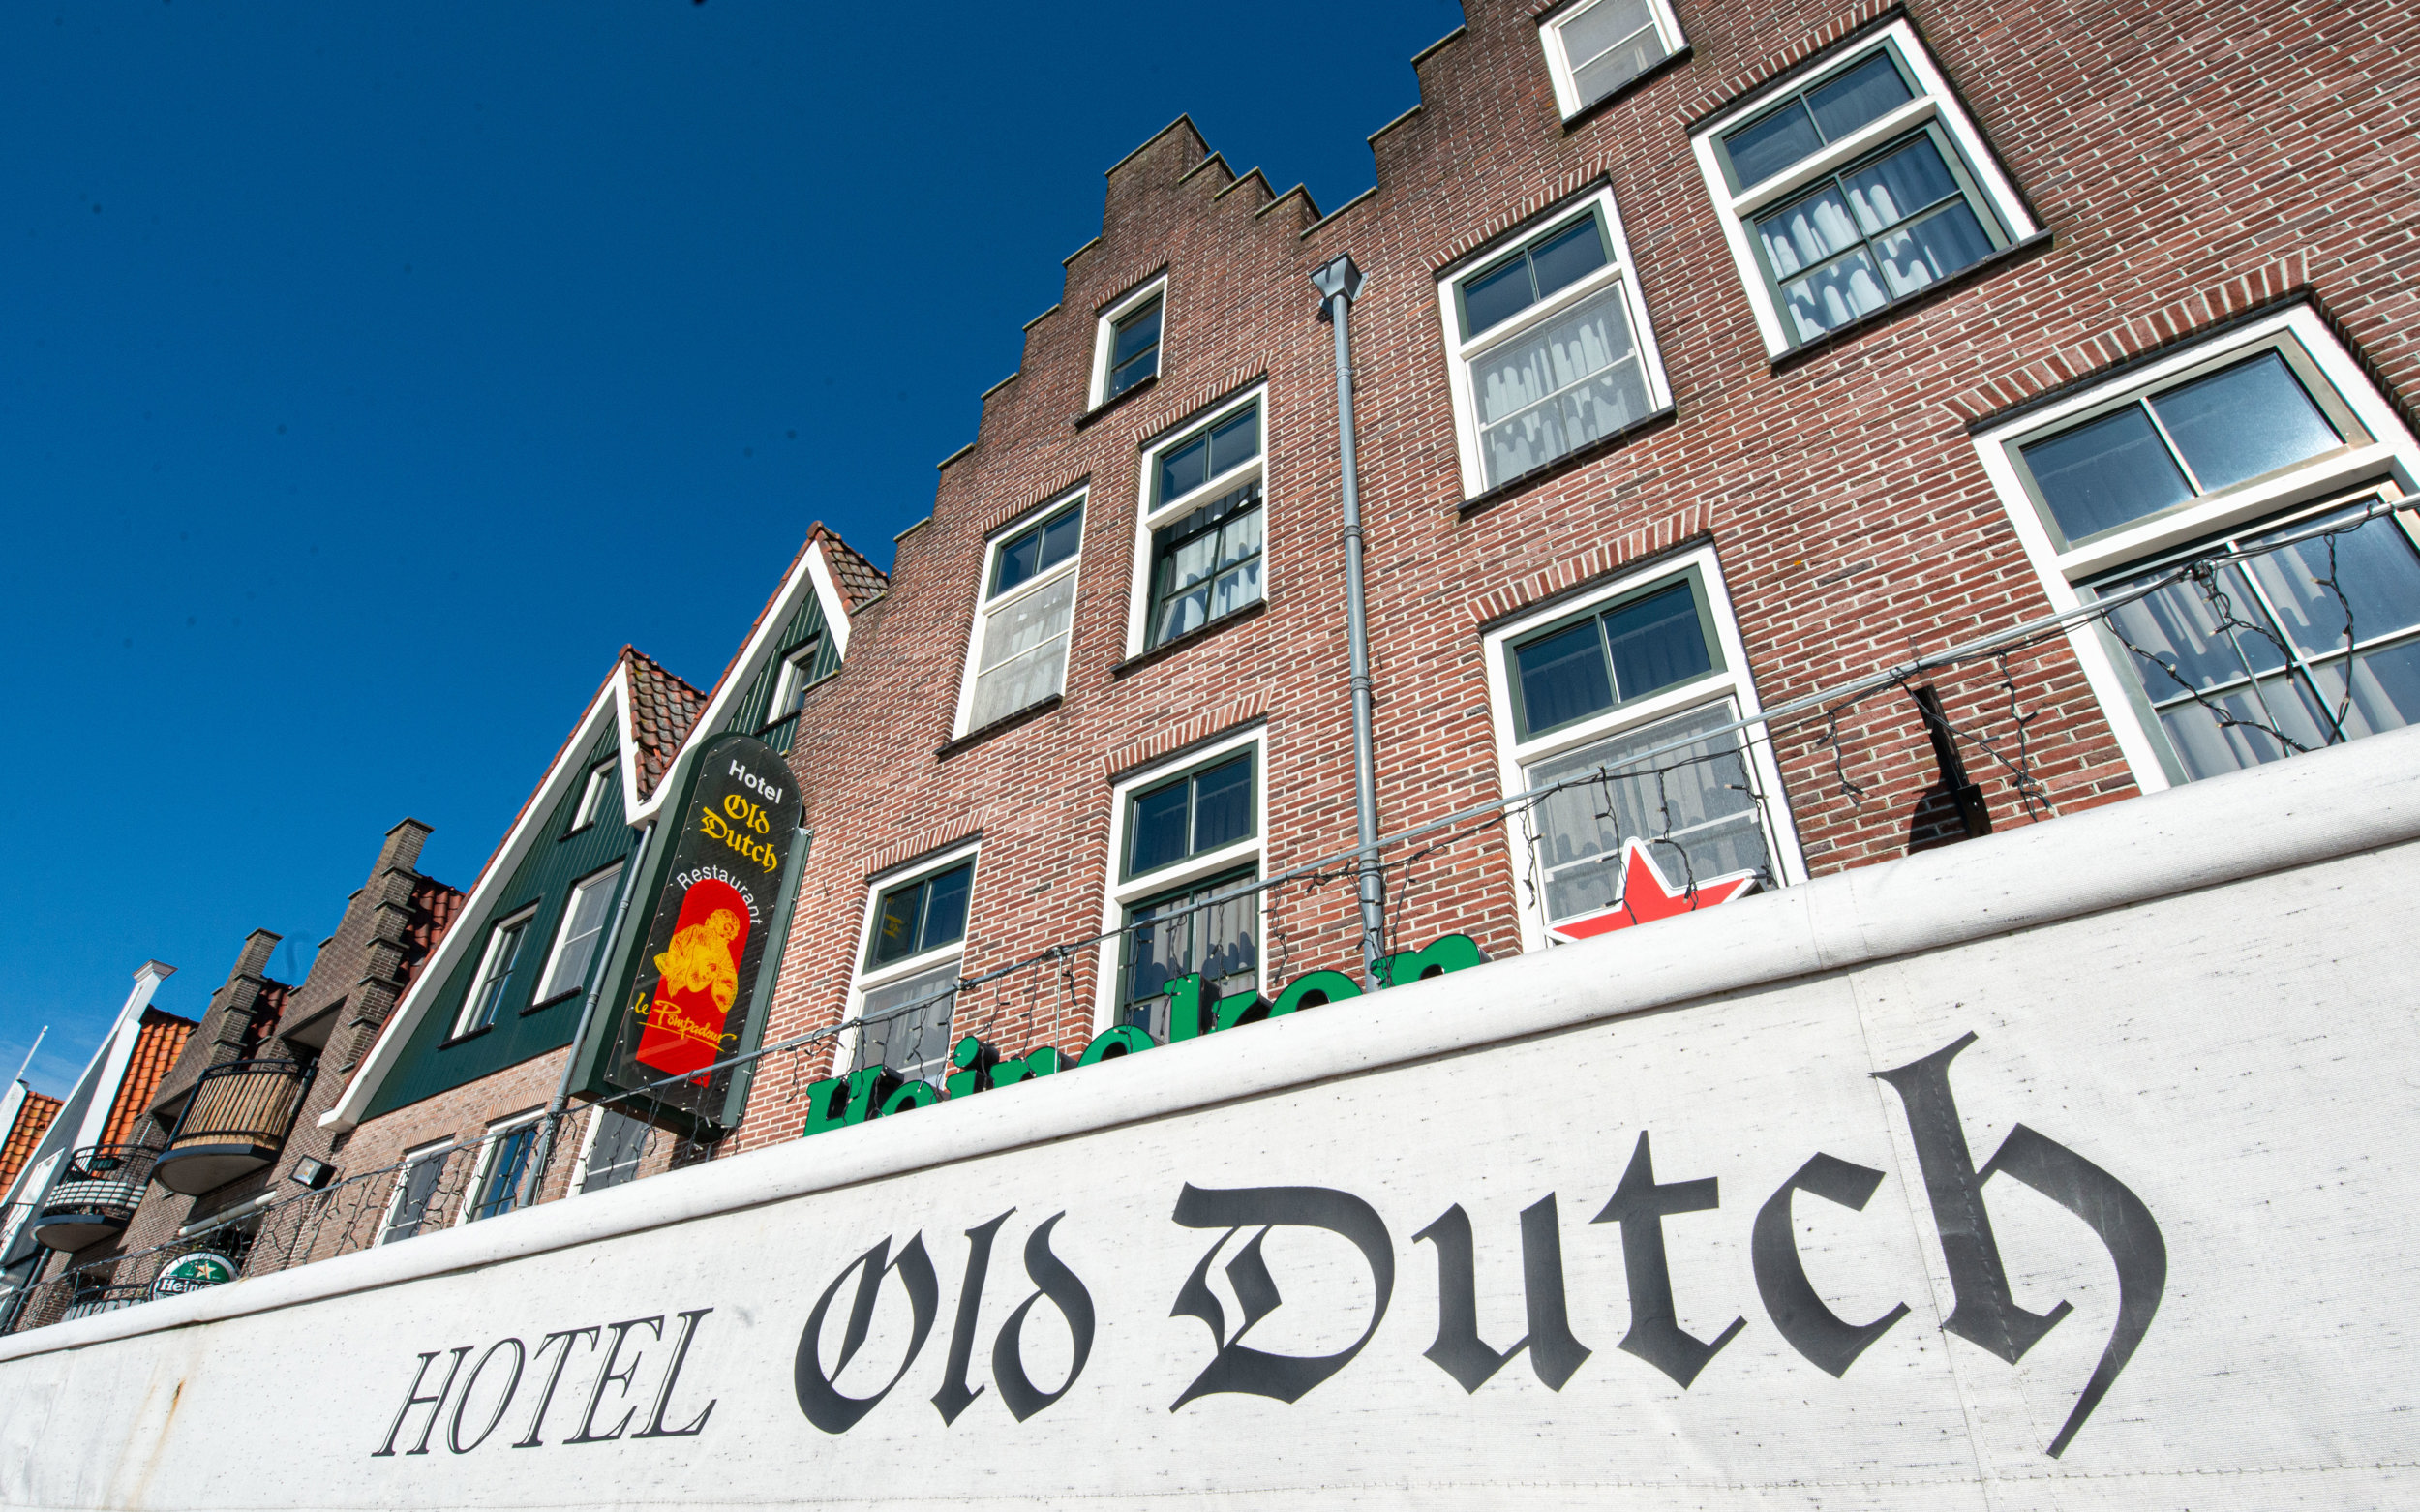 Hotel Old Dutch Hotel Old Dutch